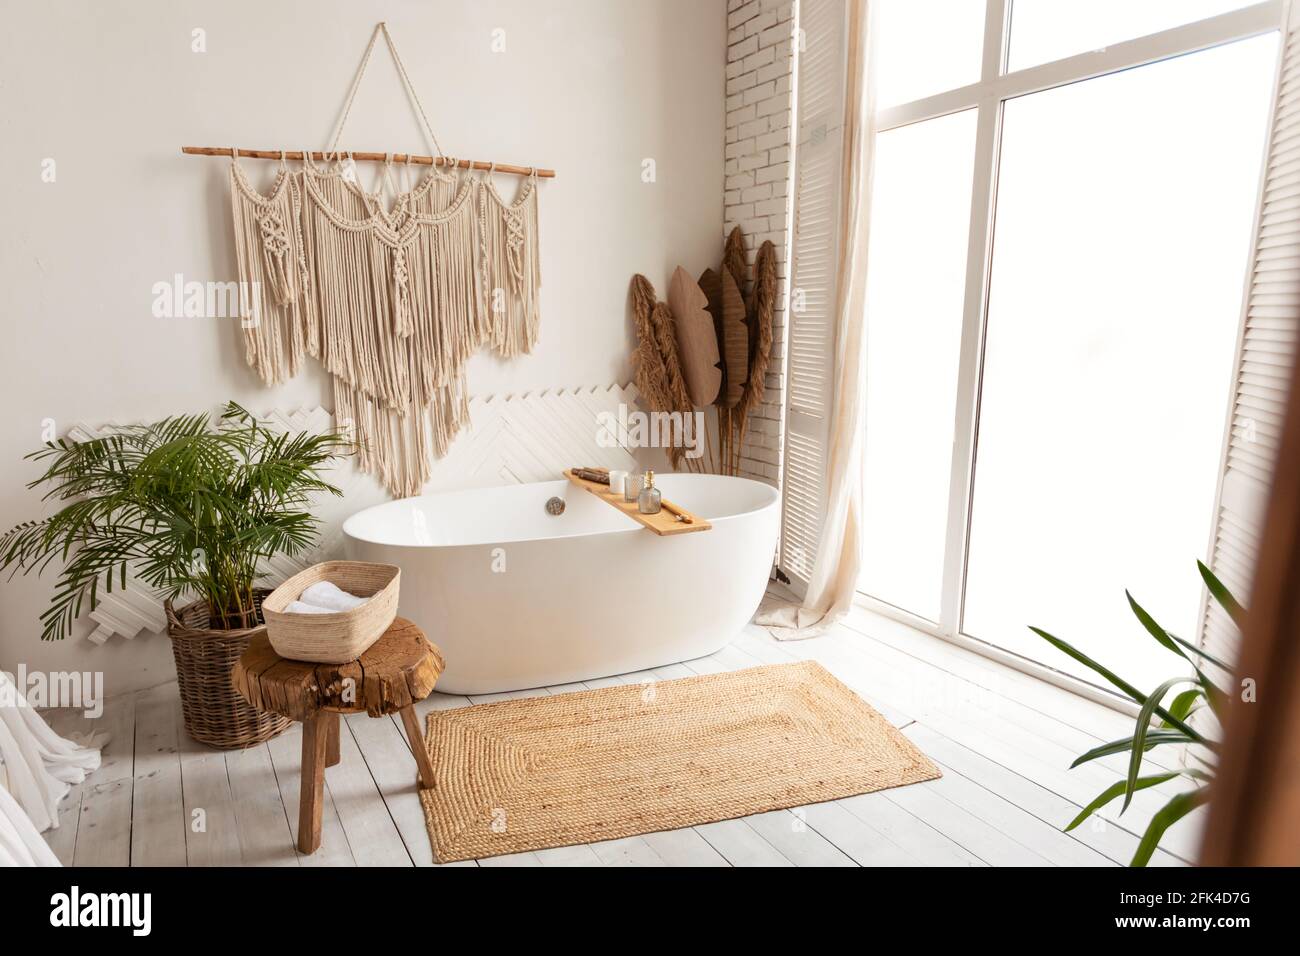 Interni accoglienti e moderni e minimalistici con grande vasca bianca all'interno Foto Stock